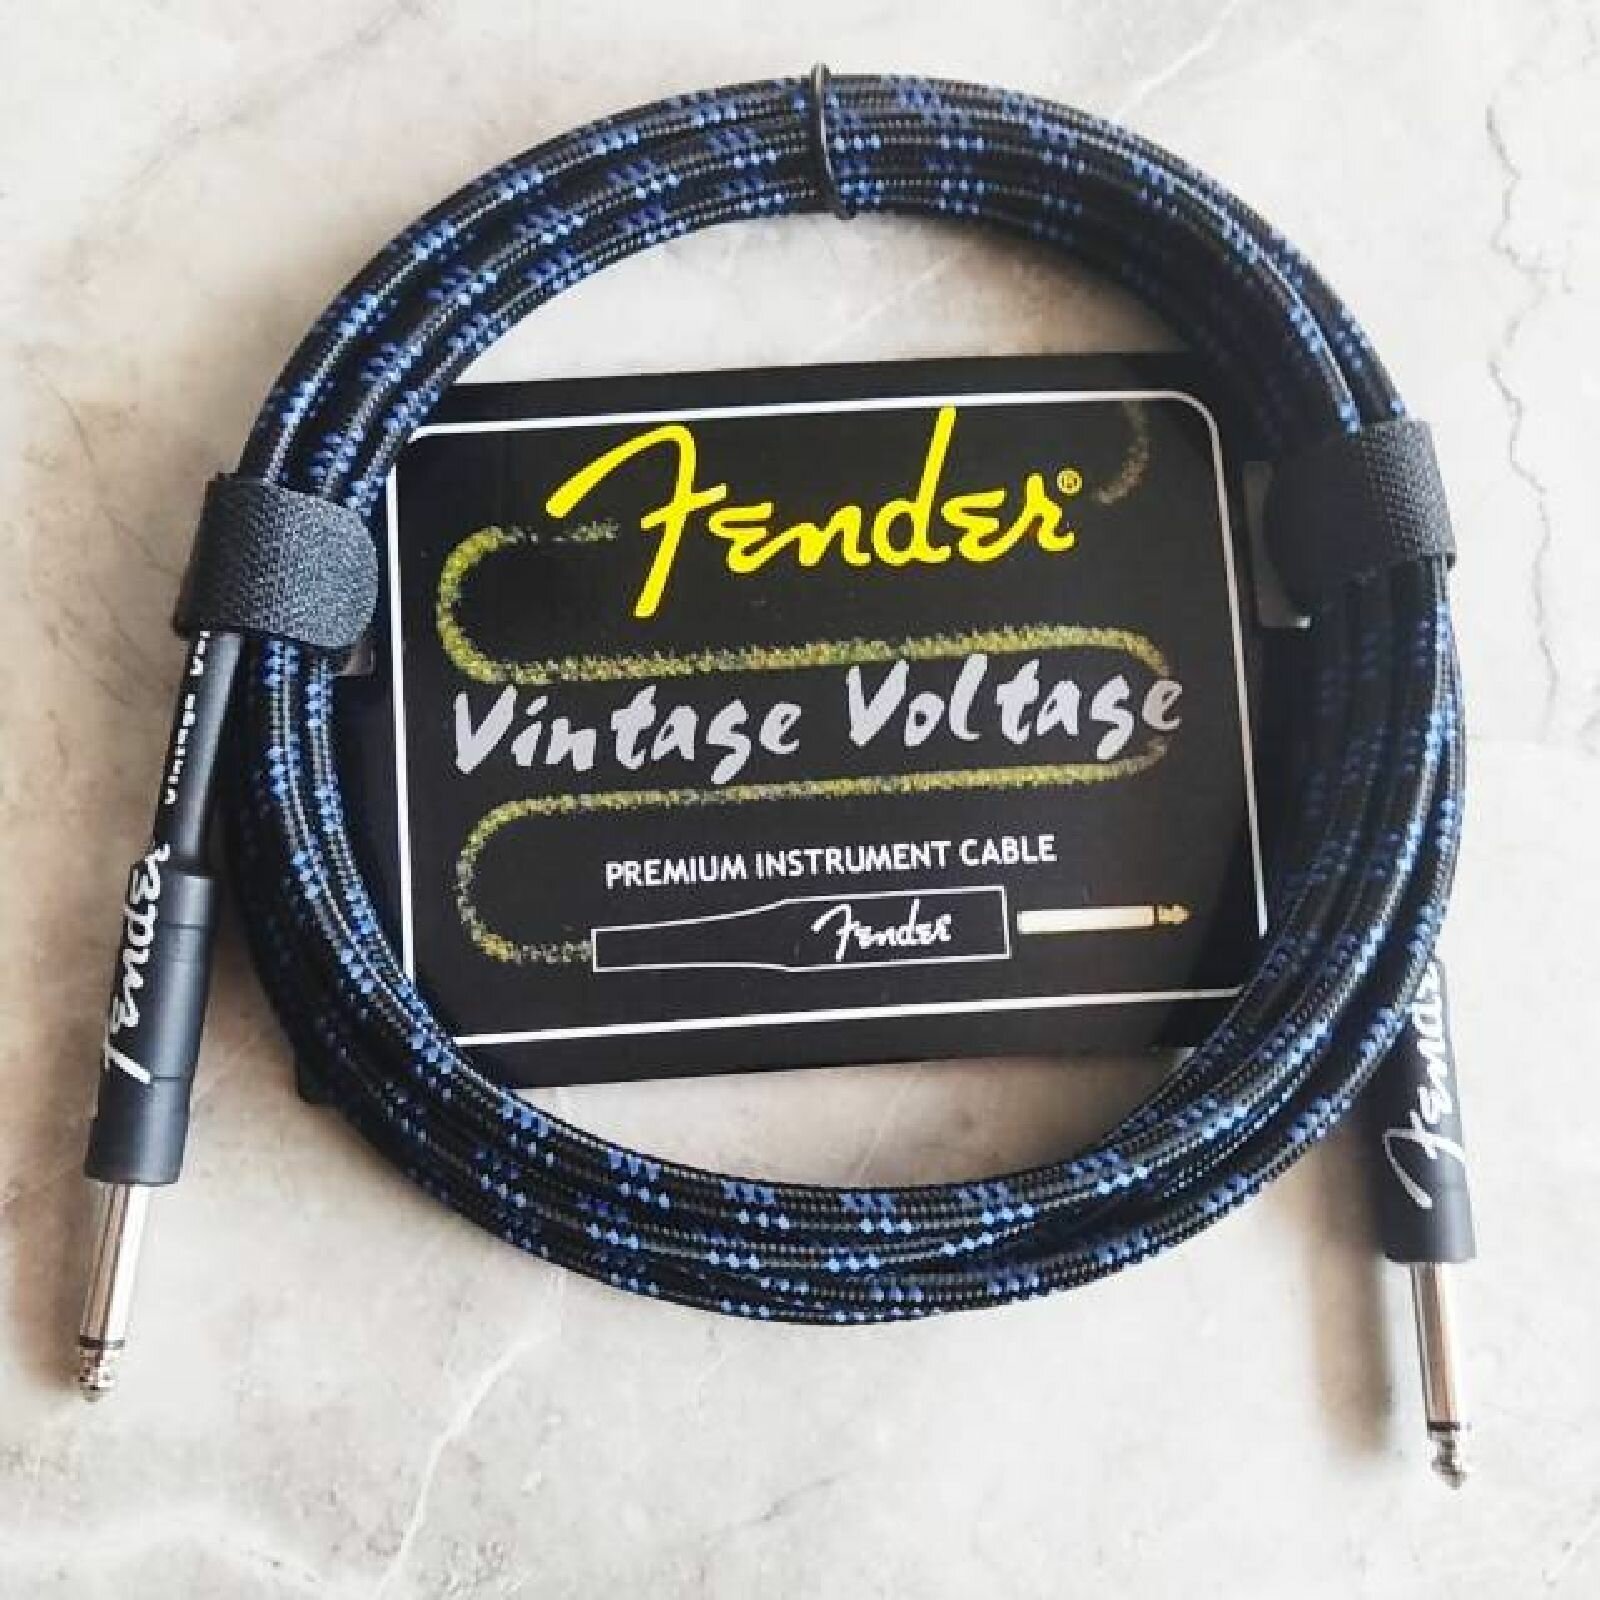 Премиум гитарный кабель 3 метра 6.3 jack Fender Vintage Voltage синий шнур для для электрогитары электроакустической провод для комбика.